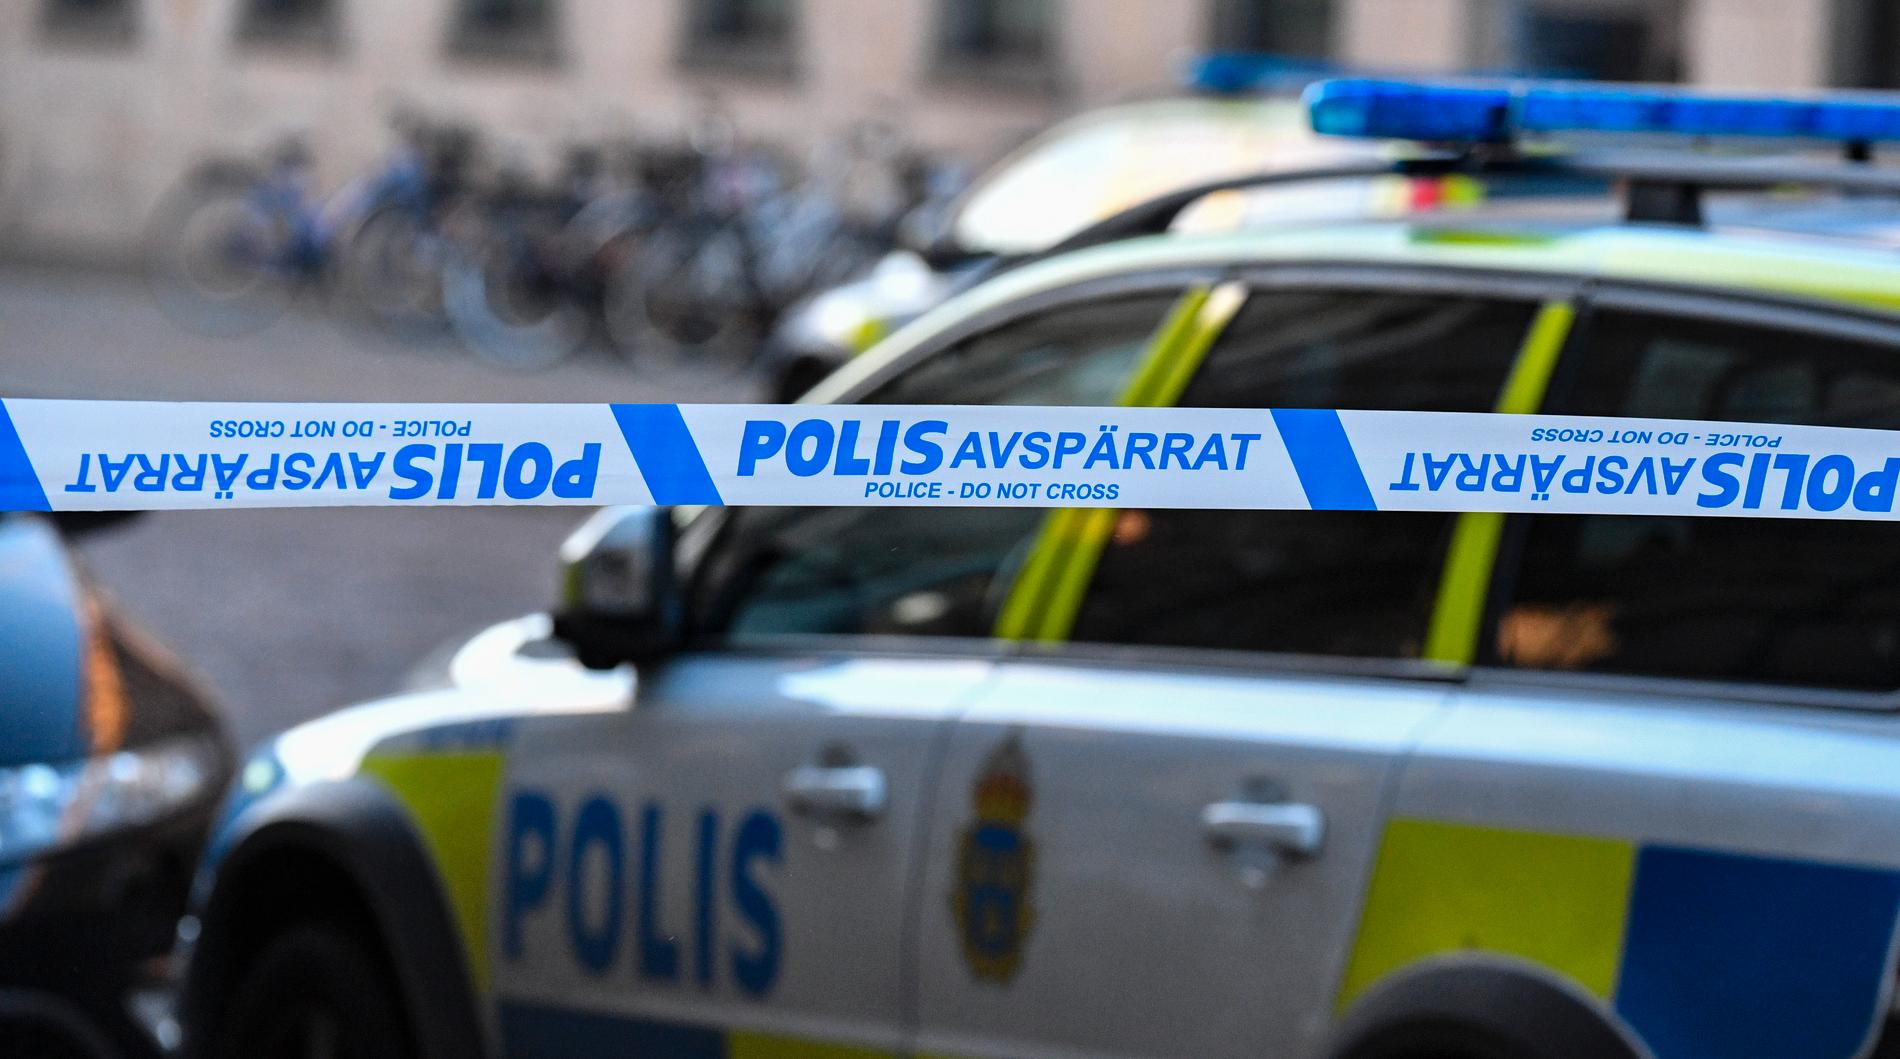 Polis och avspärrningar utanför en bank i Malmö efter ett inringt hot.